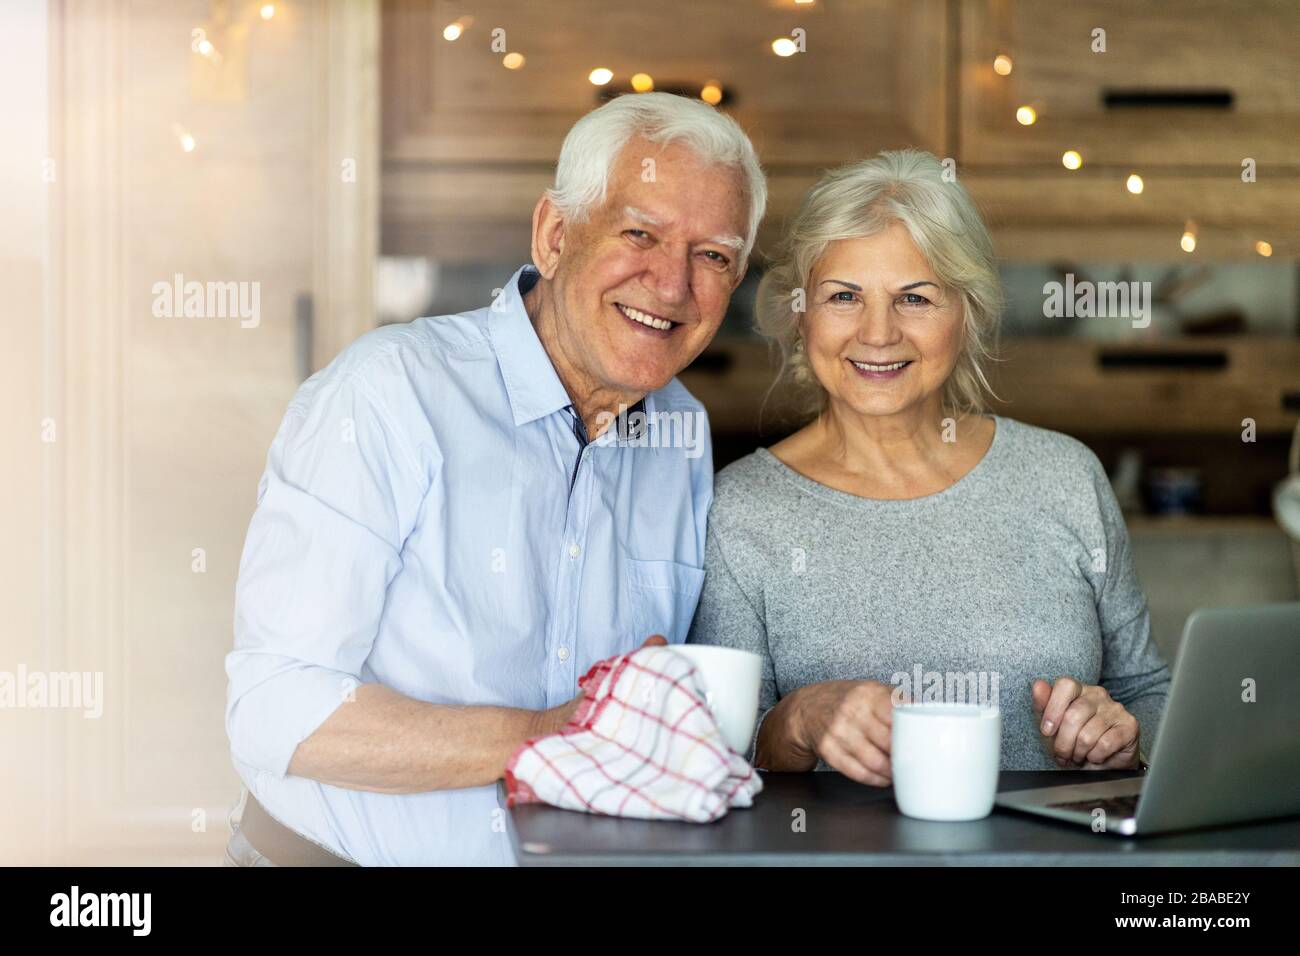 Senior couple using laptop in their kitchen Stock Photo